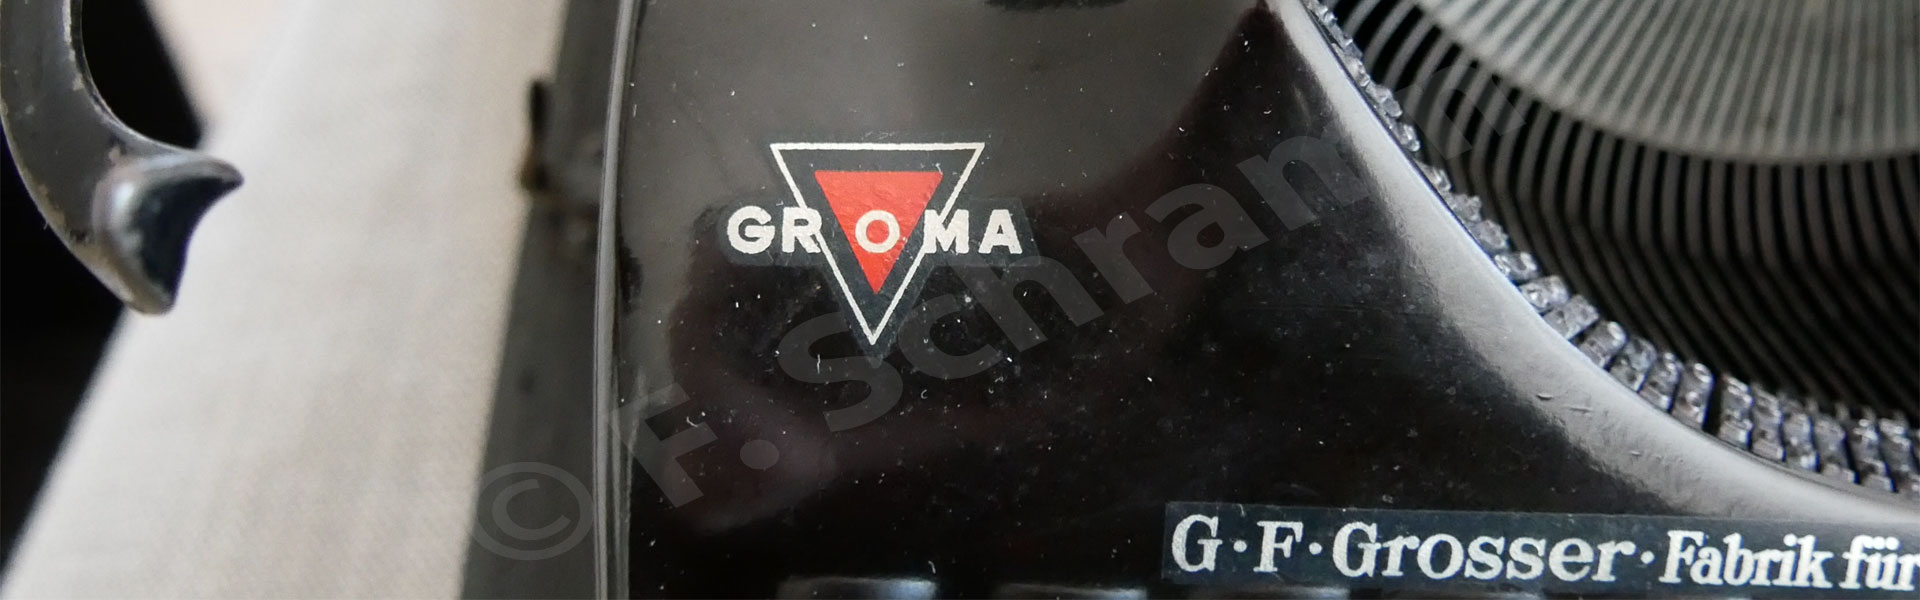 GROMA Logo auf Schreibmaschine GROMA Modell N